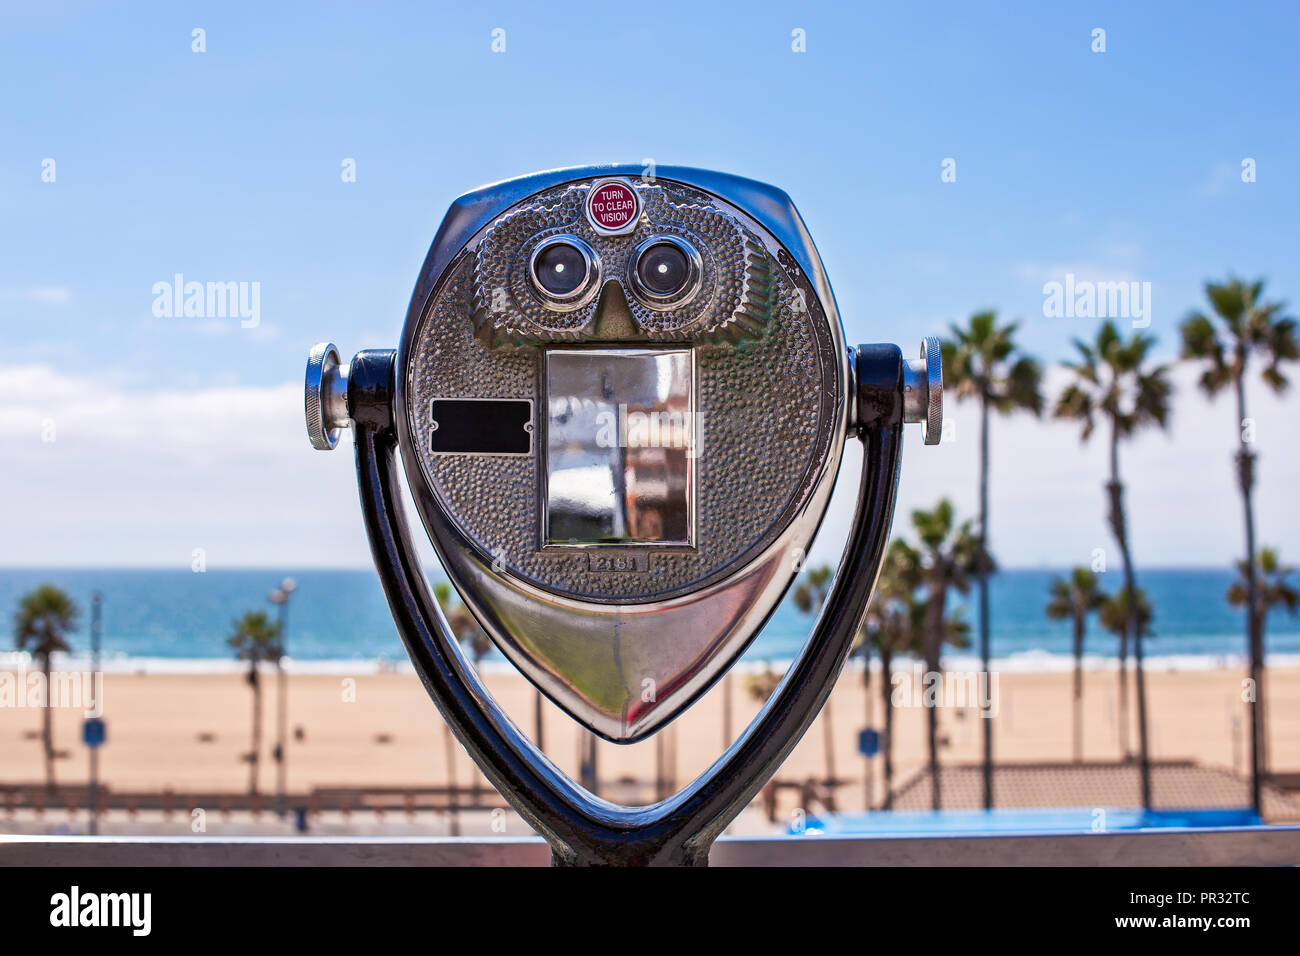 Jumelles à pièces qui donnent sur une scène de plage avec des palmiers, du sable et l'océan Pacifique à Huntington Beach, en Californie Banque D'Images